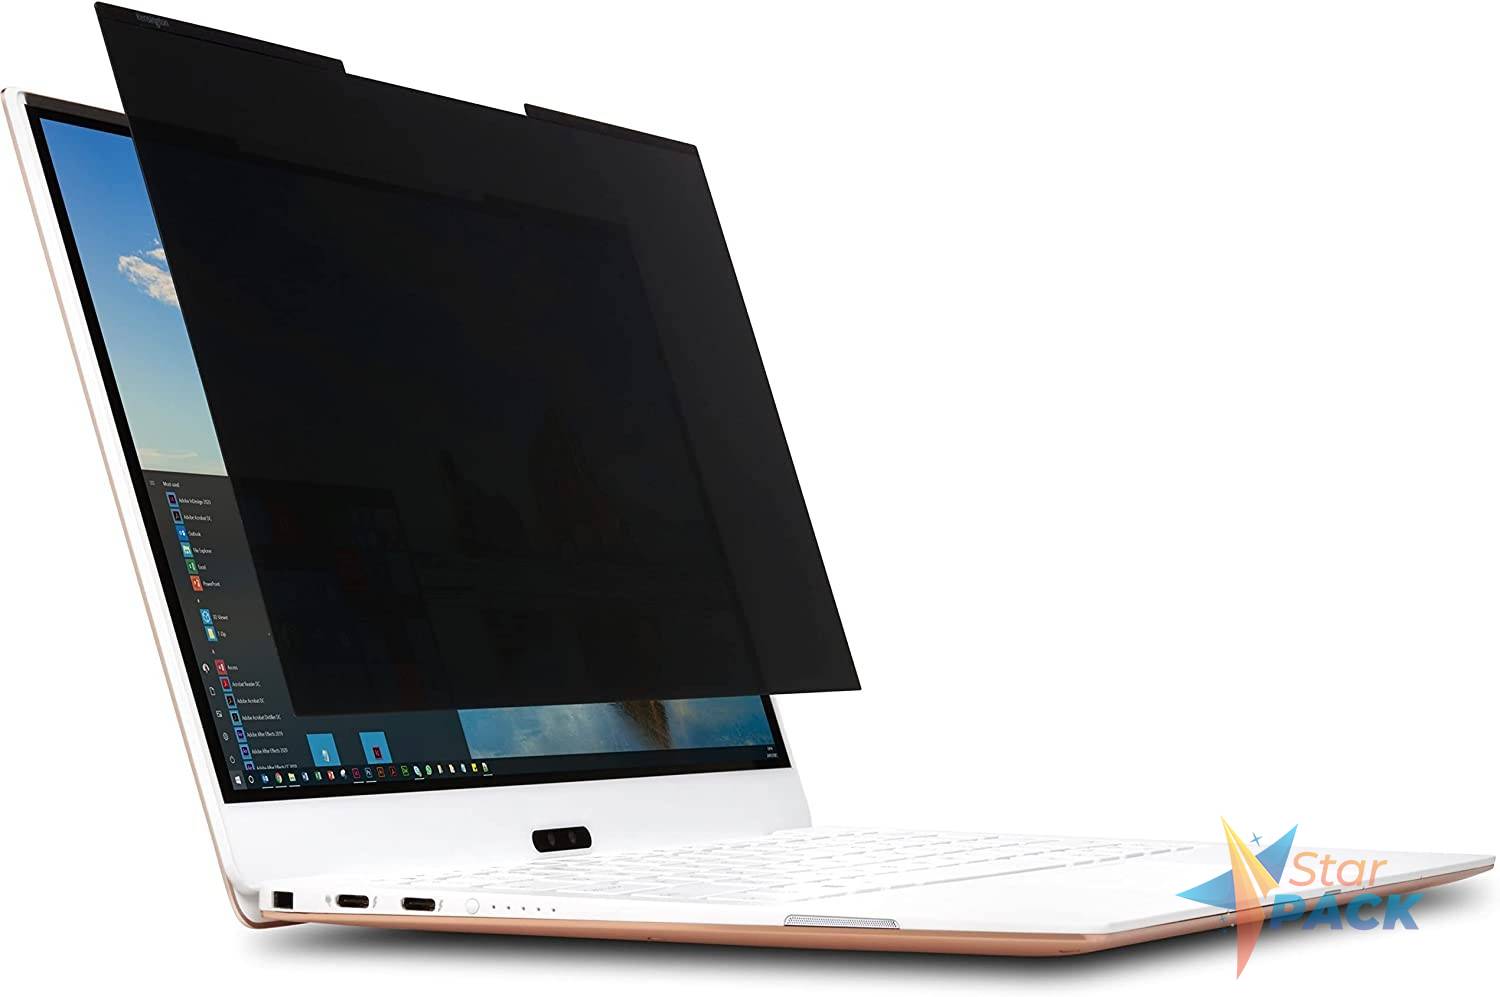 FILTRU confidentialitate Kensington MagPro, pentru laptop, 13.3, 16:9, 2 fete, magnetic, limiteaza campul vizual la 30grade, reduce lumina daunatoare cu pana la 22%, 294x1x169mm, 0.21Kg